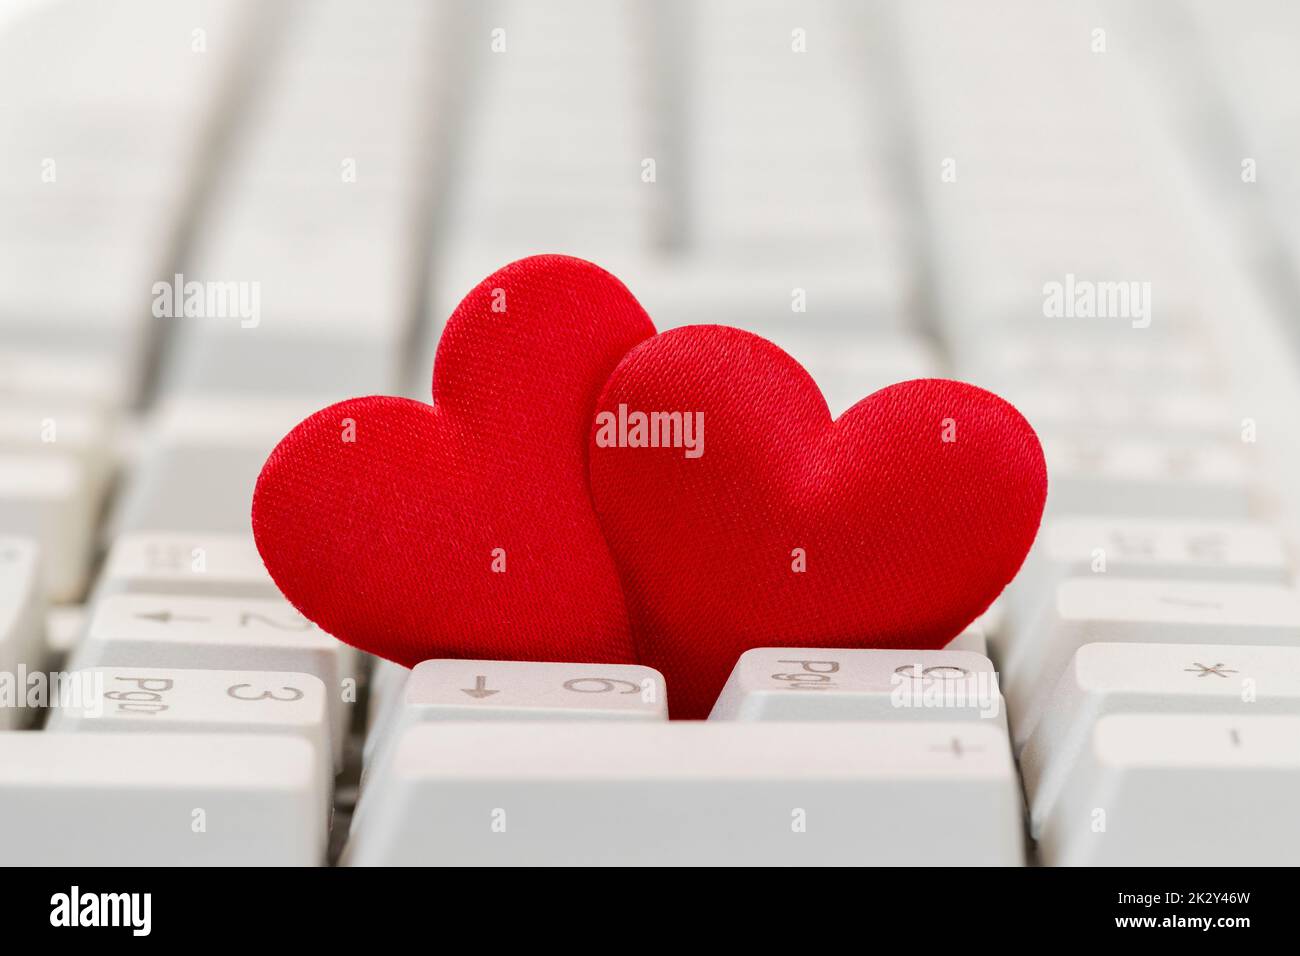 Gros plan de deux coeurs rouges sur le clavier Banque D'Images